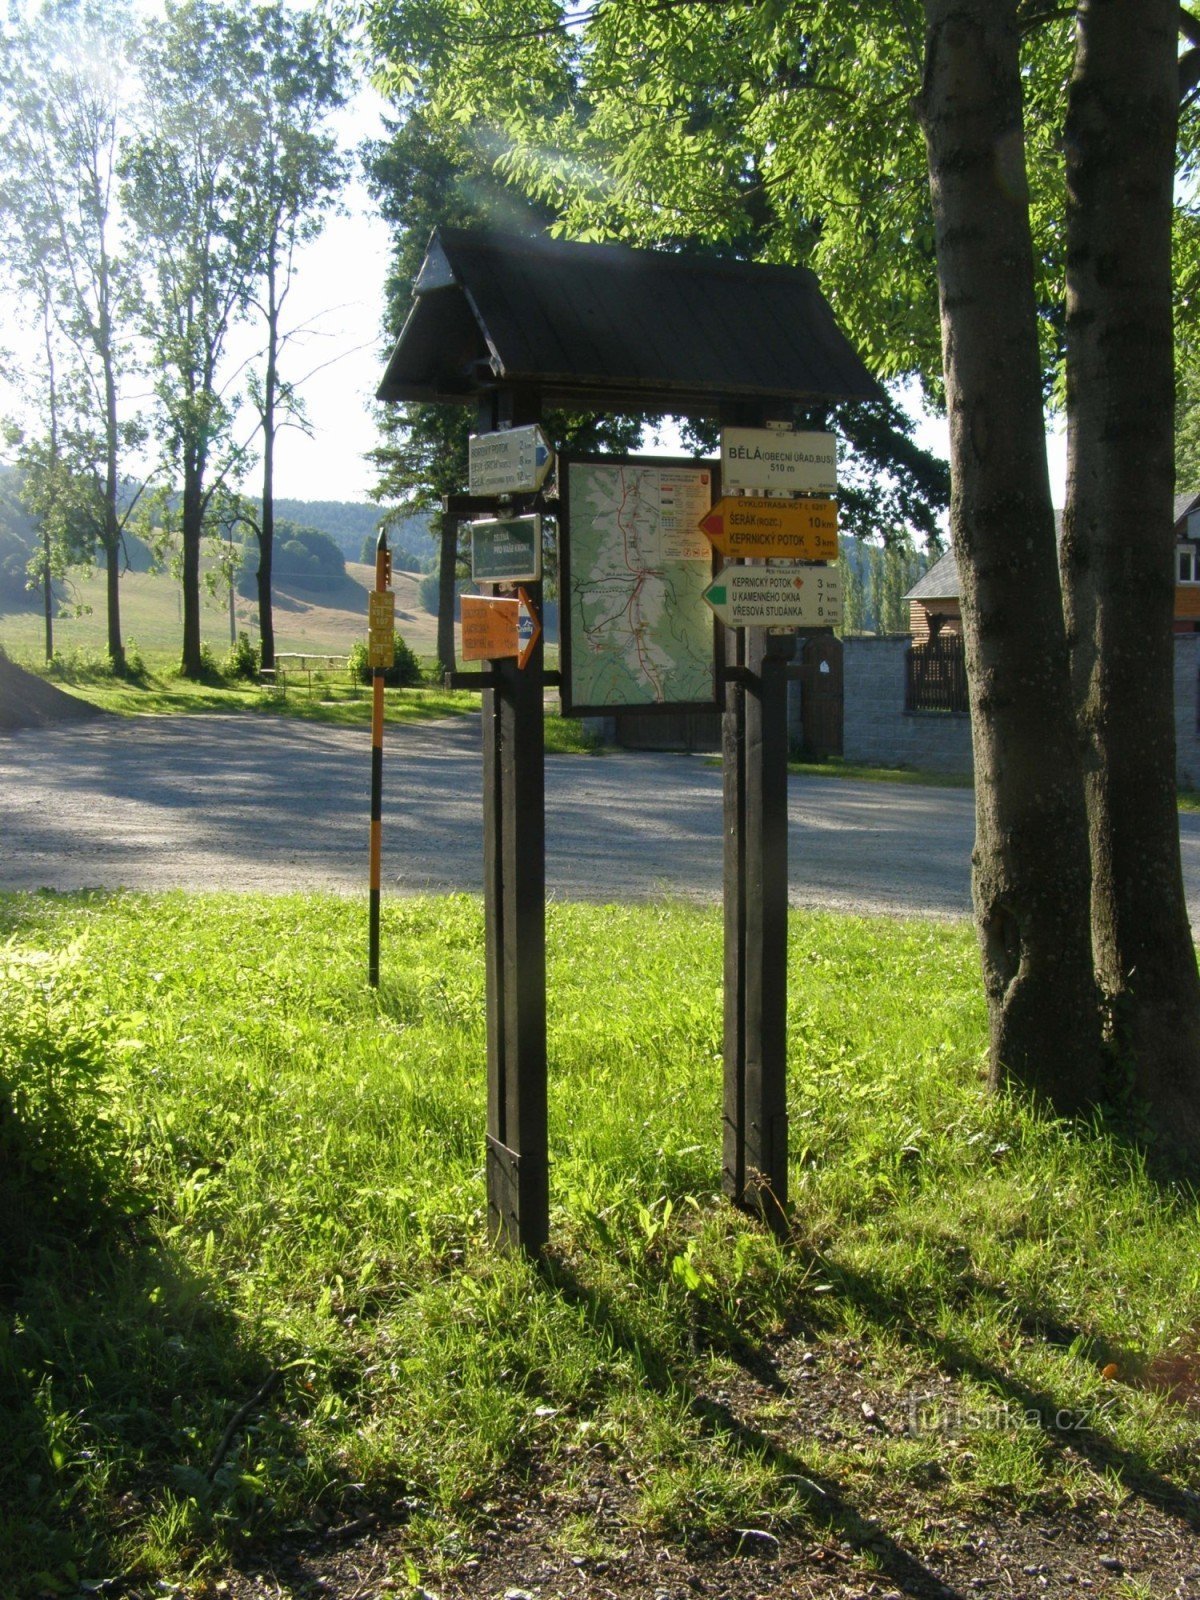 τουριστικό σταυροδρόμι Bělá pod Pradědem - λεωφορείο, δημοτικό γραφείο